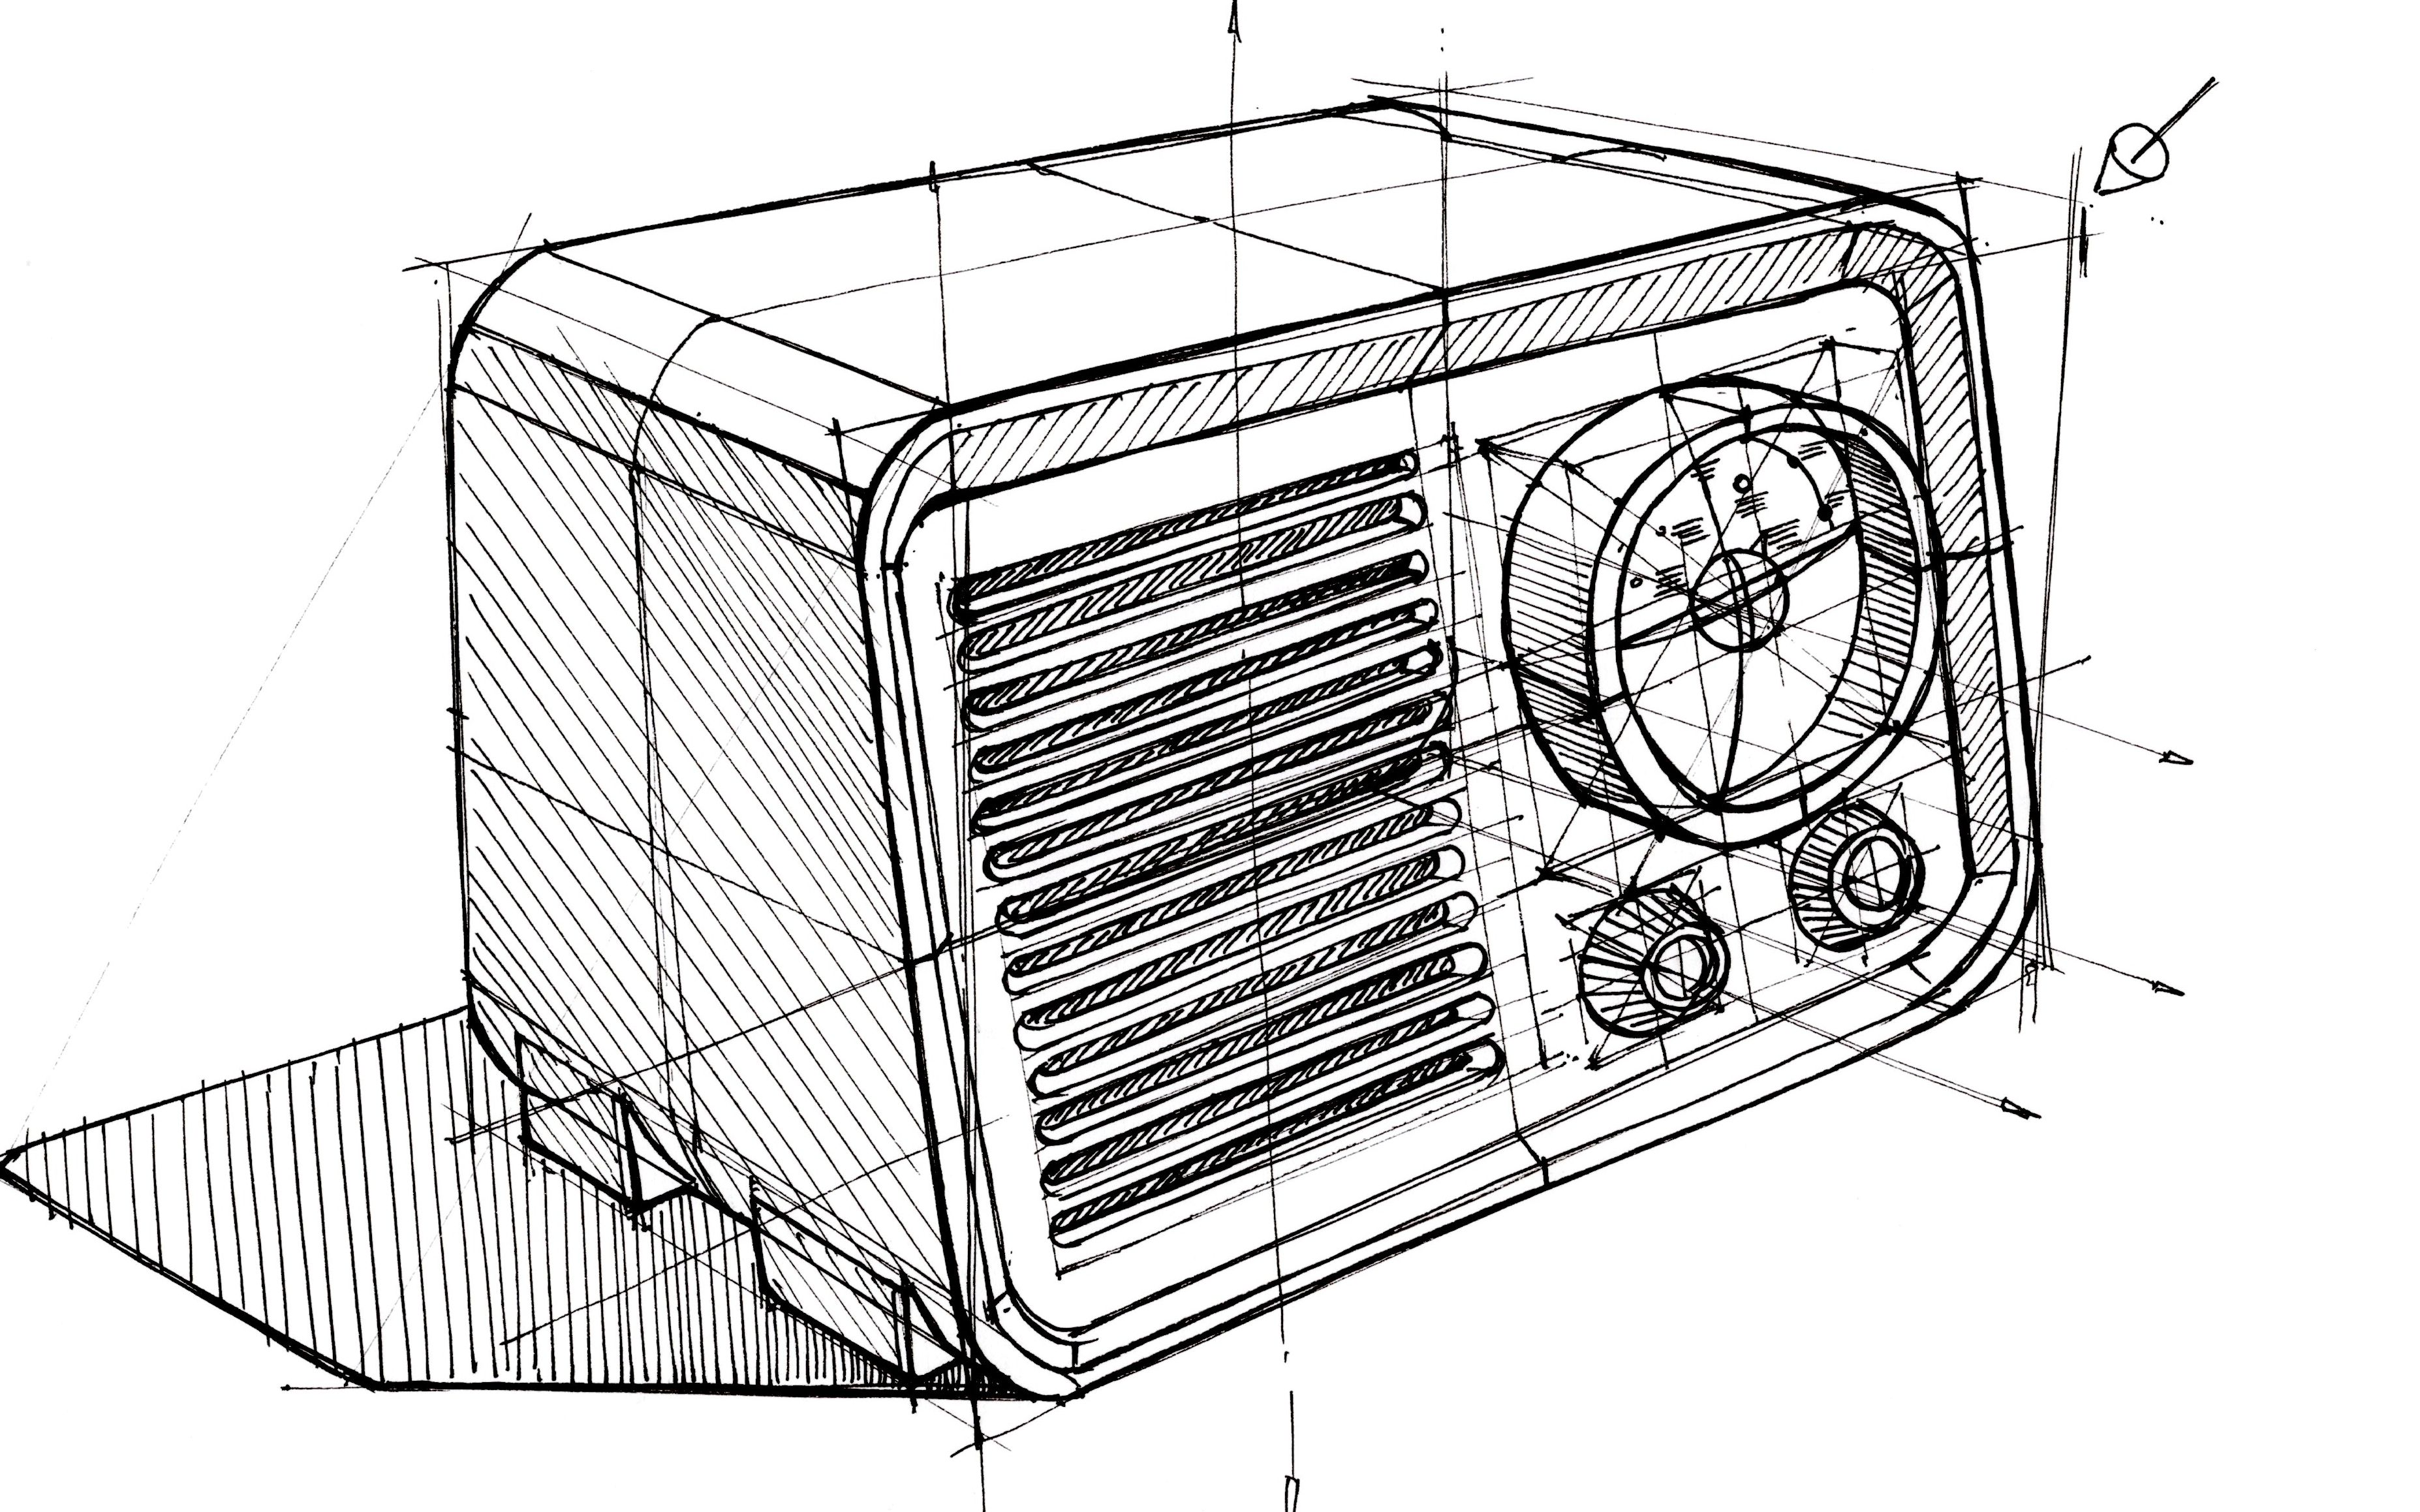 【工业产品设计手绘】原创方正形体收音机线稿绘制